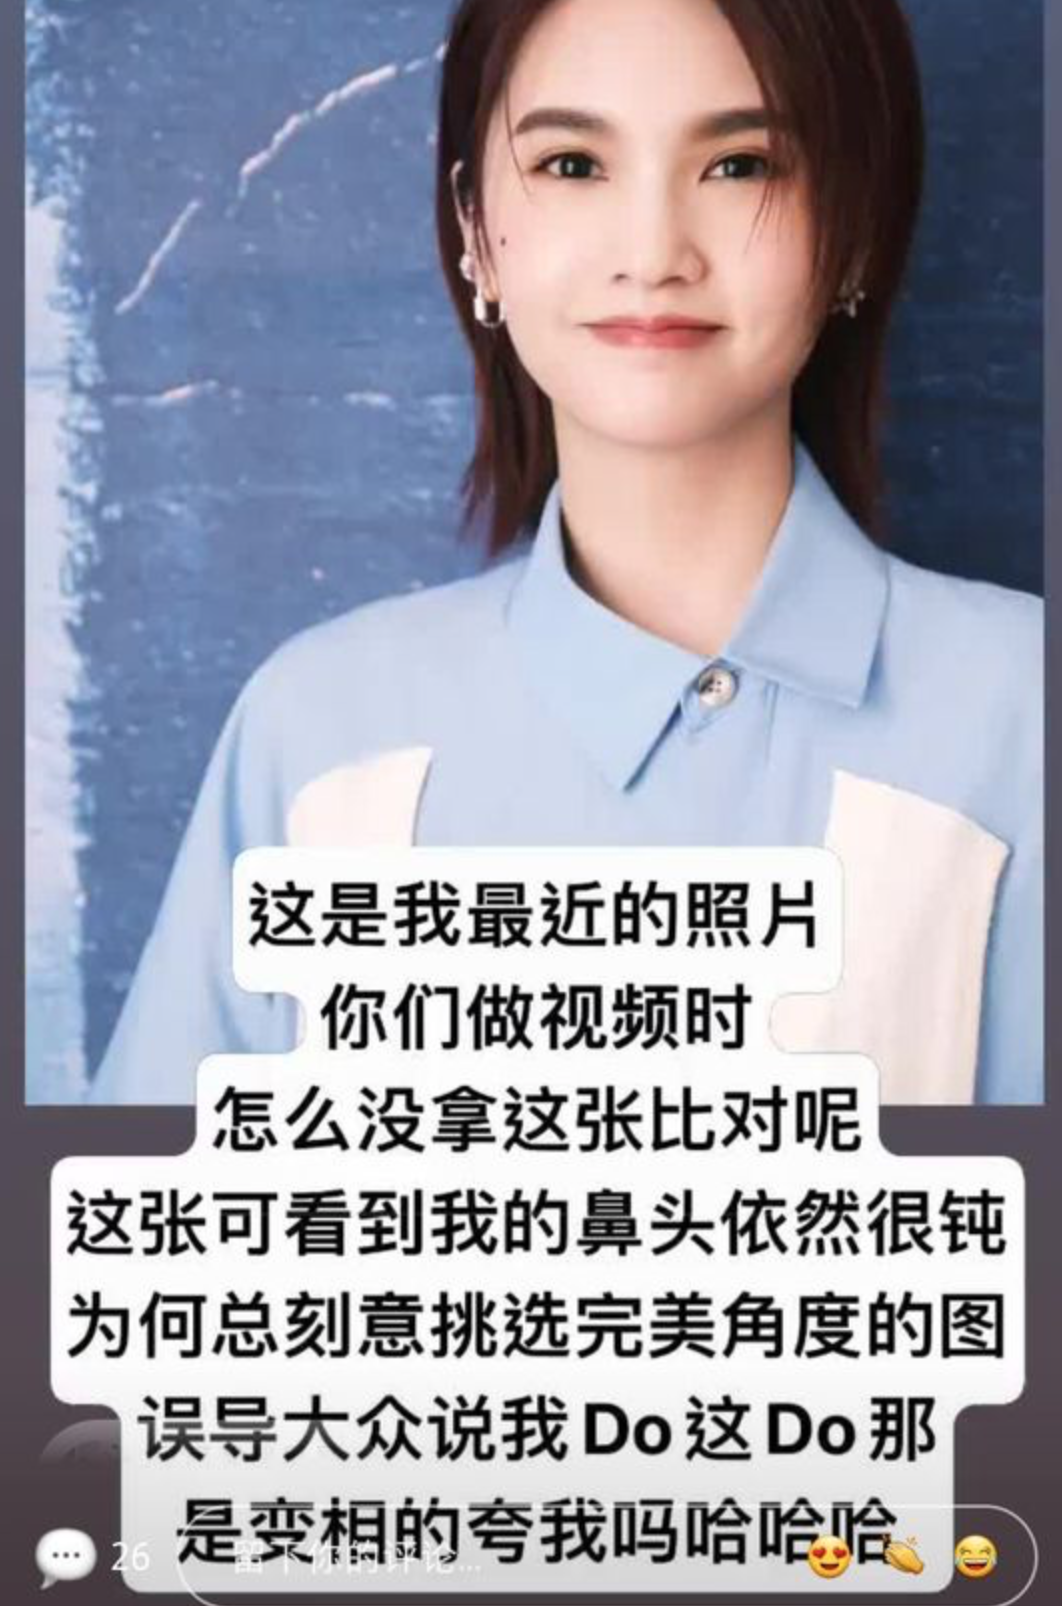 Rainie Yang plastic surgery rumours